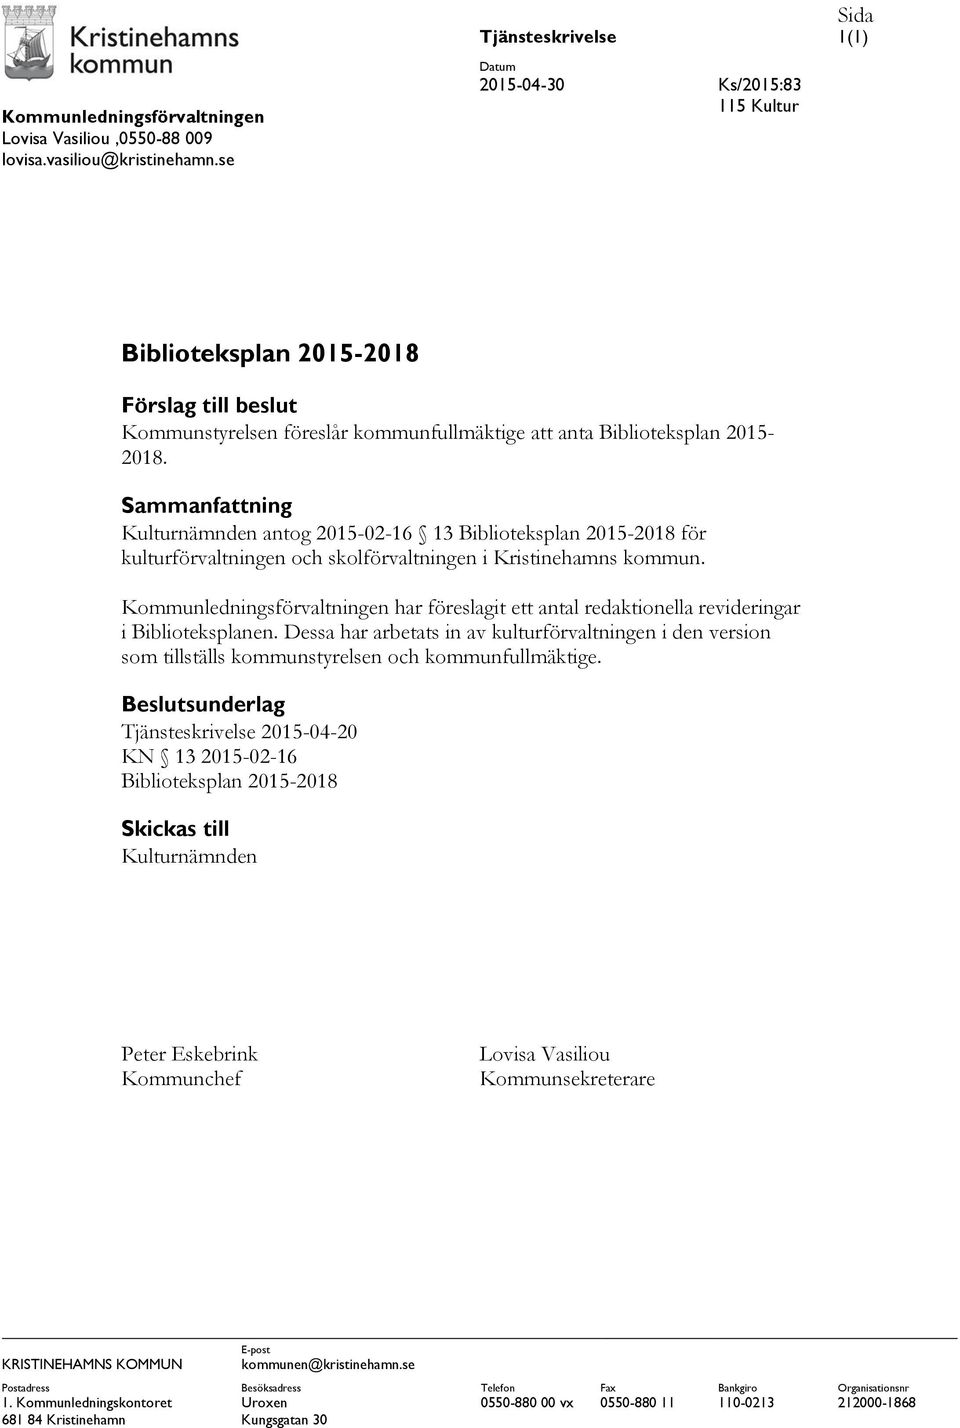 Sammanfattning Kulturnämnden antog 2015-02-16 13 Biblioteksplan 2015-2018 för kulturförvaltningen och skolförvaltningen i Kristinehamns kommun.